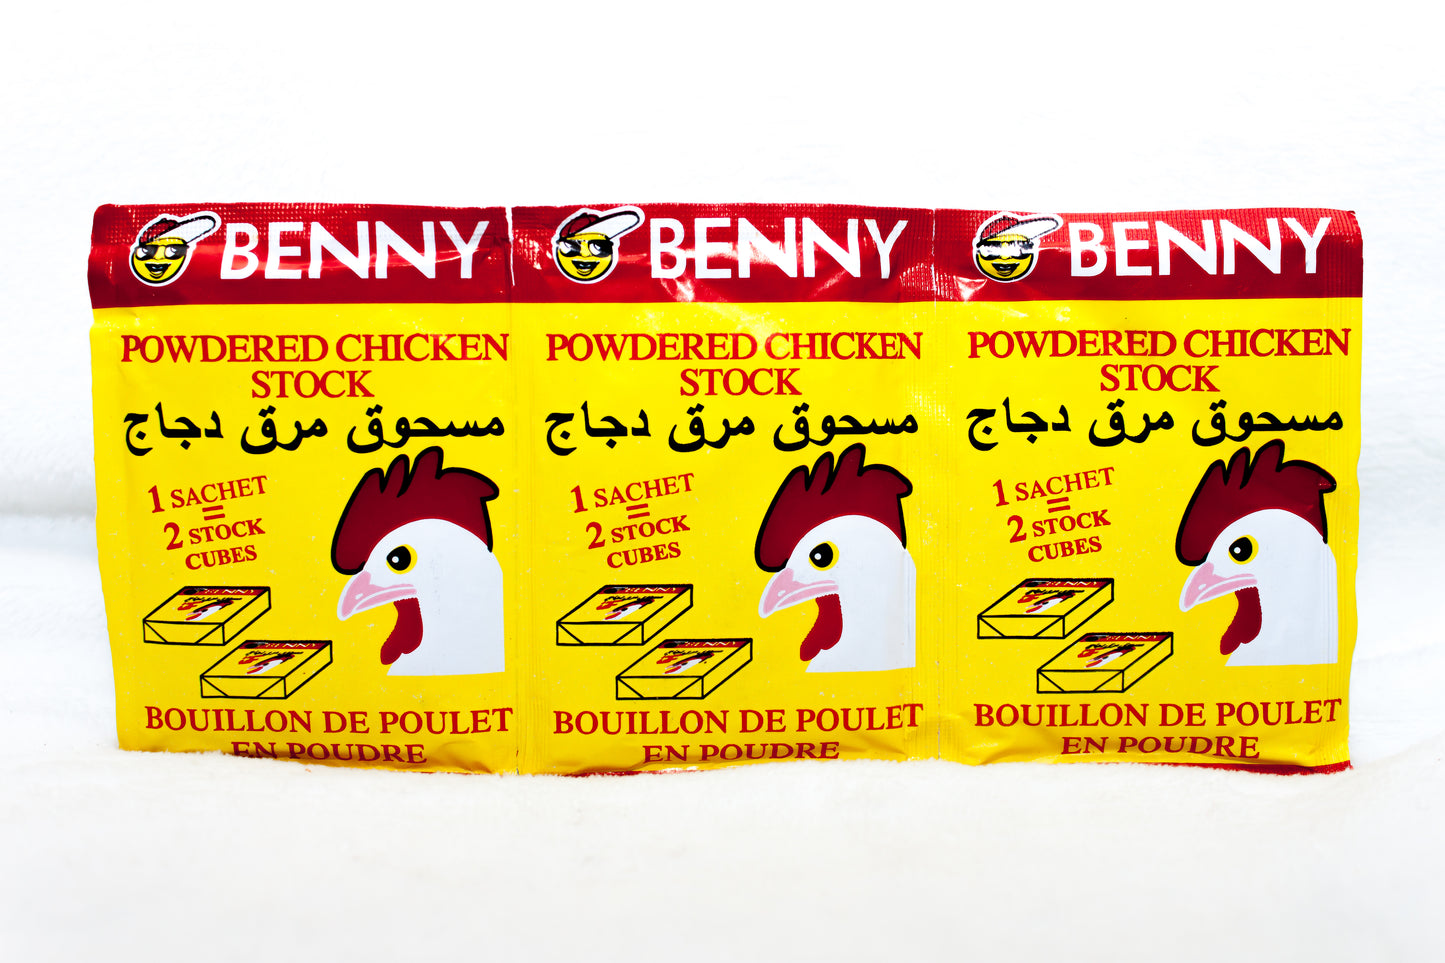 Benny Powder Chicken Stock